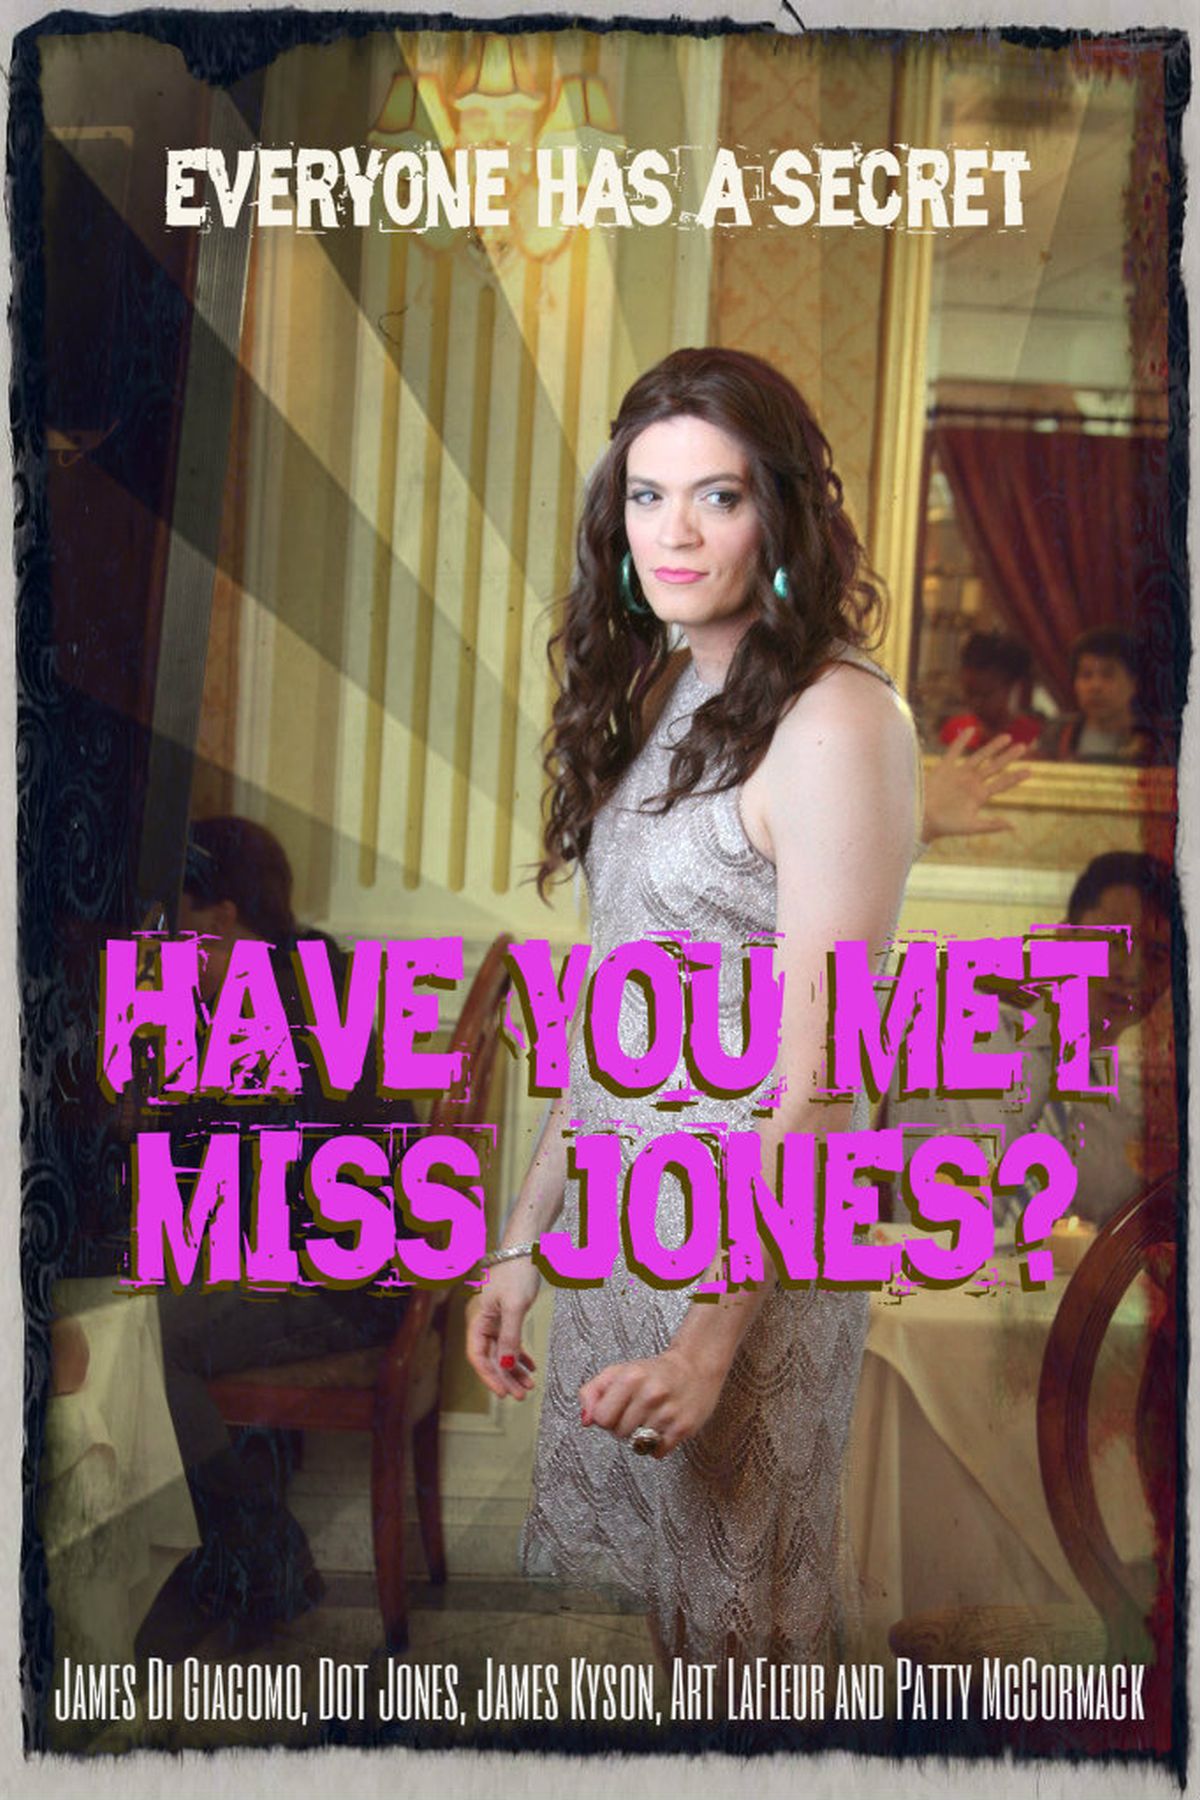 Have You Met Miss Jones? DVD cover